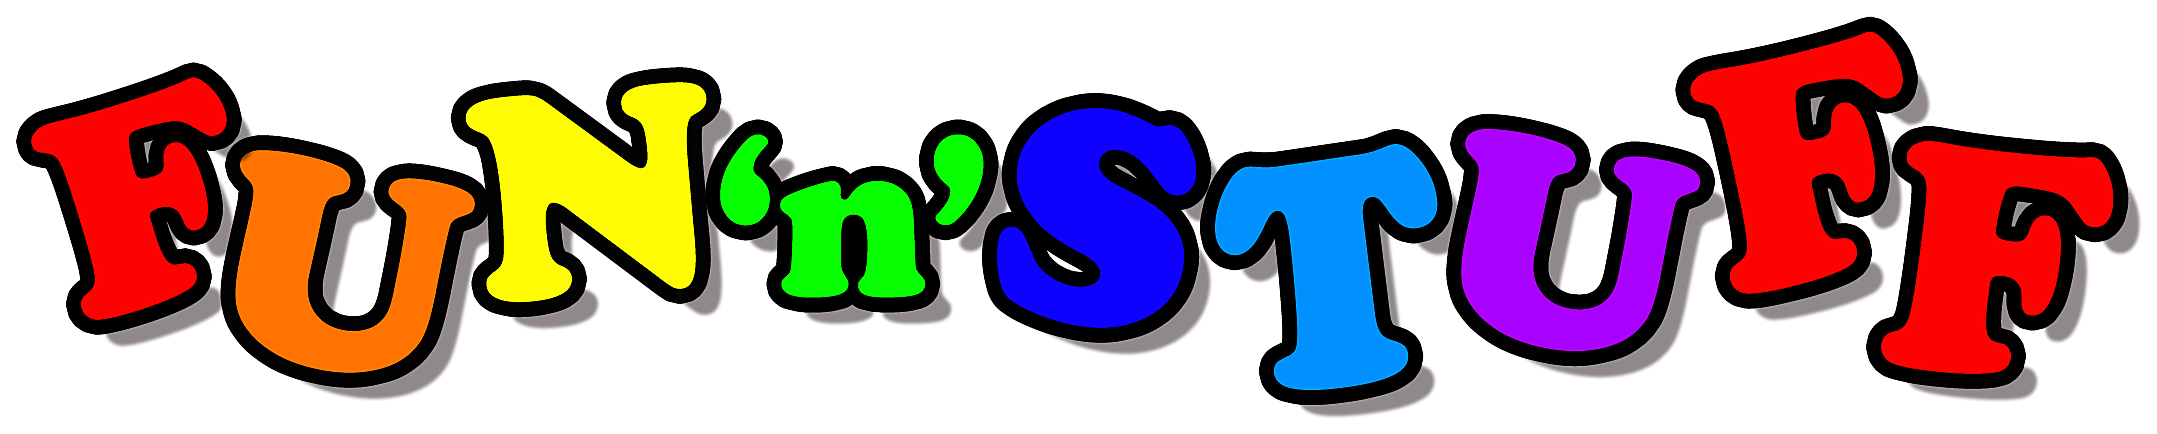 Logo - Amusement Park (2300x576)